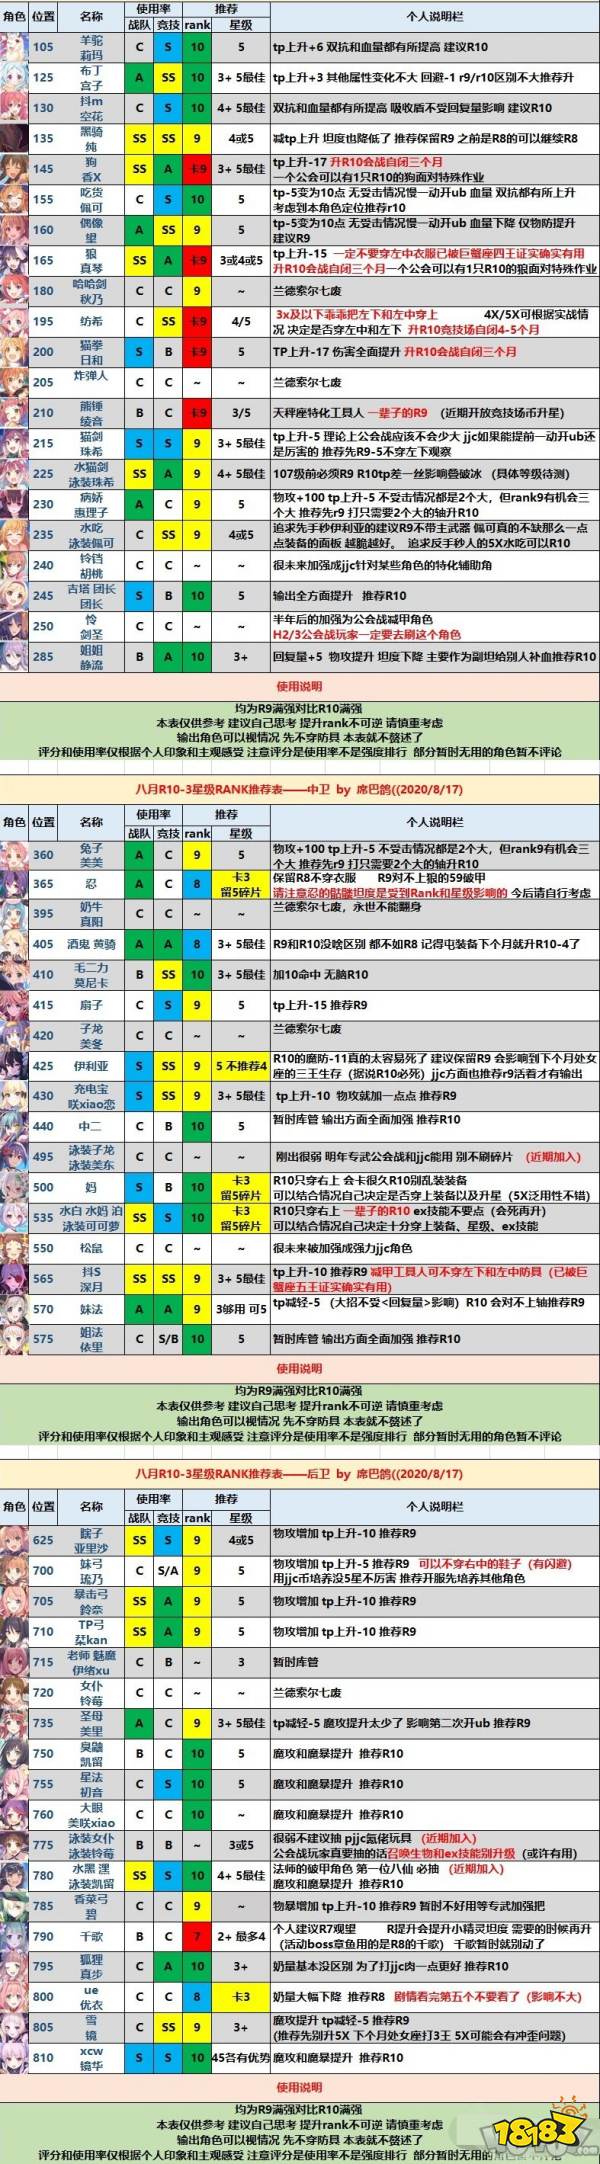 公主连结八月rank9升级rank10么 2020rank10-3推荐